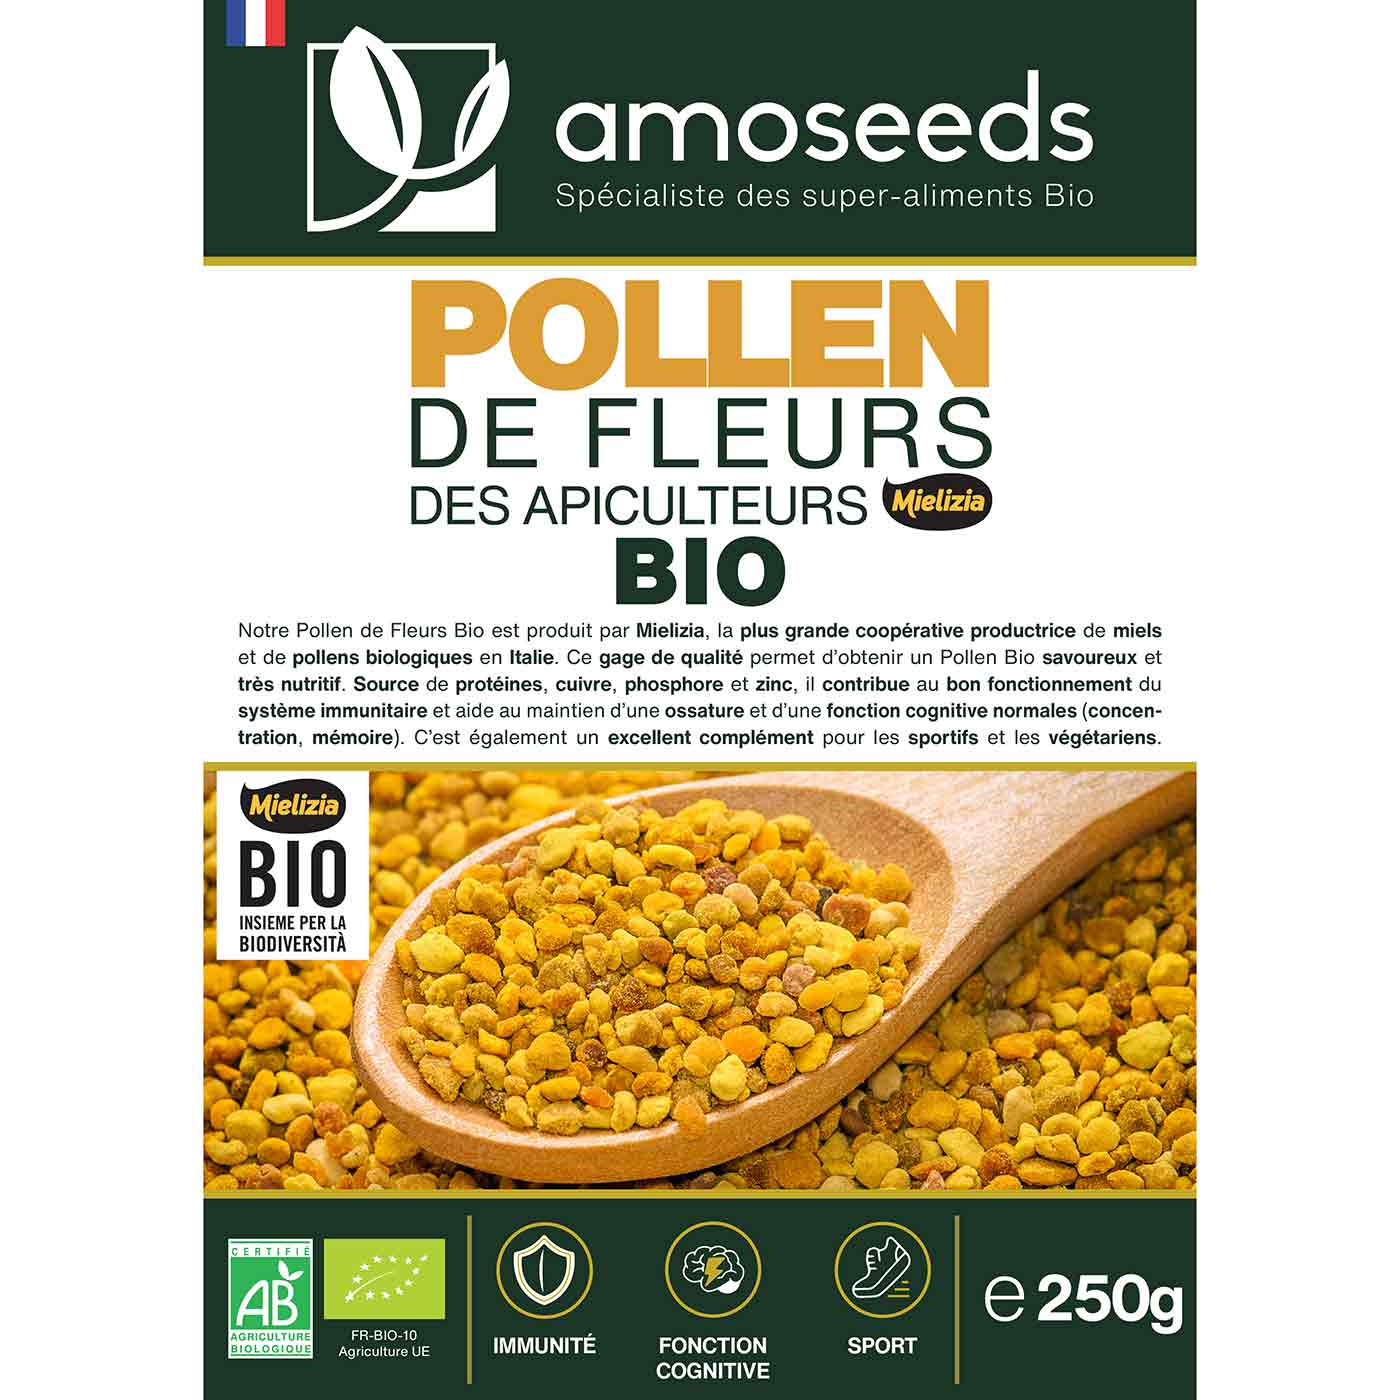 Pollen de Fleurs Bio amoseeds specialiste des super aliments Bio